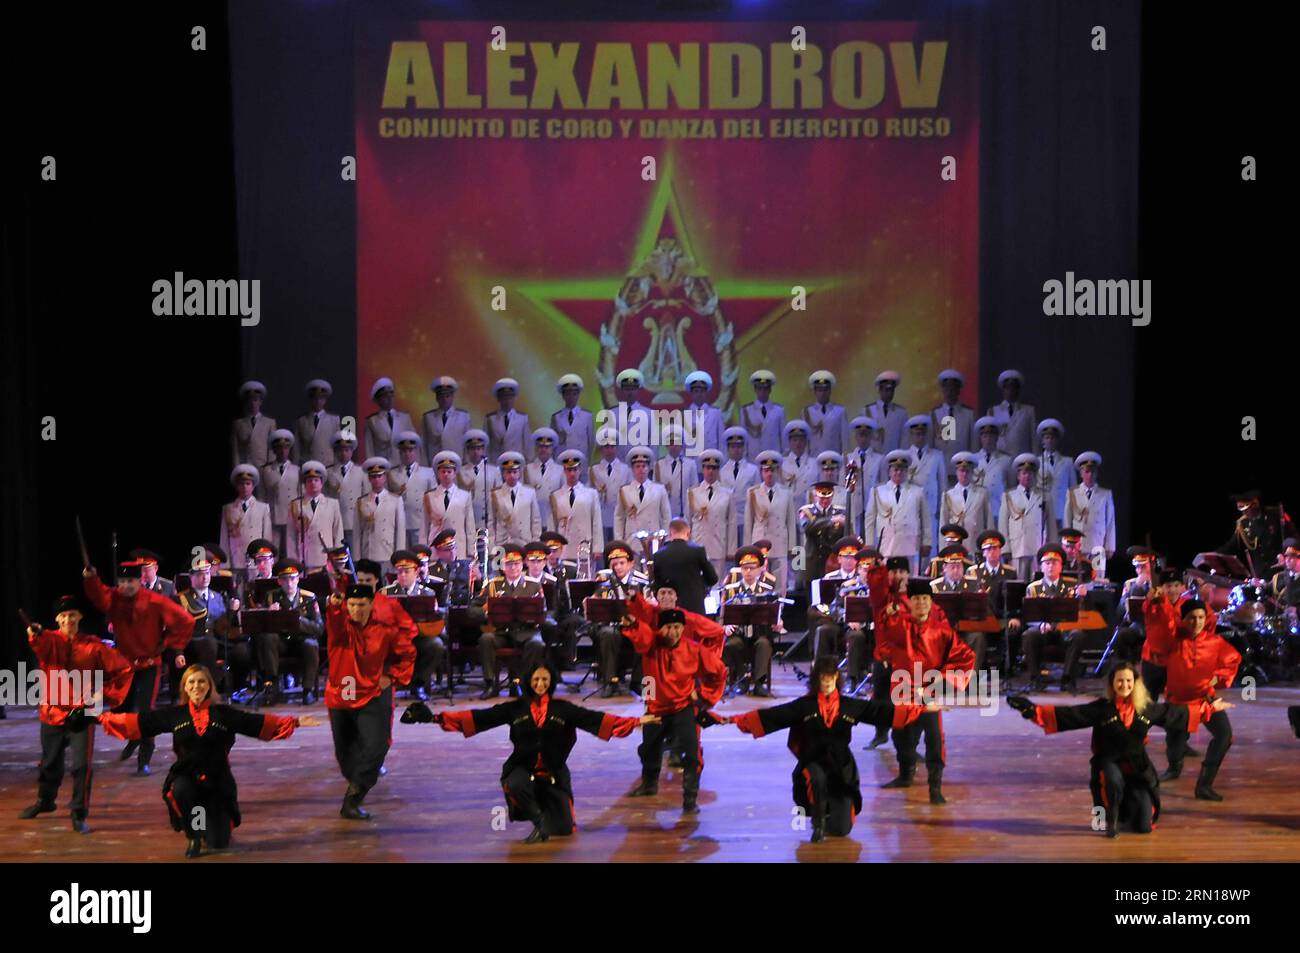 Les membres de l'ensemble académique de chant et de danse Alexandrov de l'armée russe se produisent lors d'un spectacle à la salle Avellaneda du Théâtre national de la Havane, capitale de Cuba, le 6 décembre 2014. Joaquin Hernandez) (azp) CUBA-HAVANA-RUSSIA-CULTURE-SHOW e Joaquin PUBLICATIONxNOTxINxCHN les membres de l'ensemble académique chant et danse Alexandrov de Russie S Army se produisent lors d'un spectacle À la salle avellaneda du Théâtre National de la Havane capitale de Cuba LE 6 2014 décembre Joaquin Hernandez EGP Cuba Havana Russia Culture Show e Joaquin PUBLICATIONxNOTxINxCHN Banque D'Images